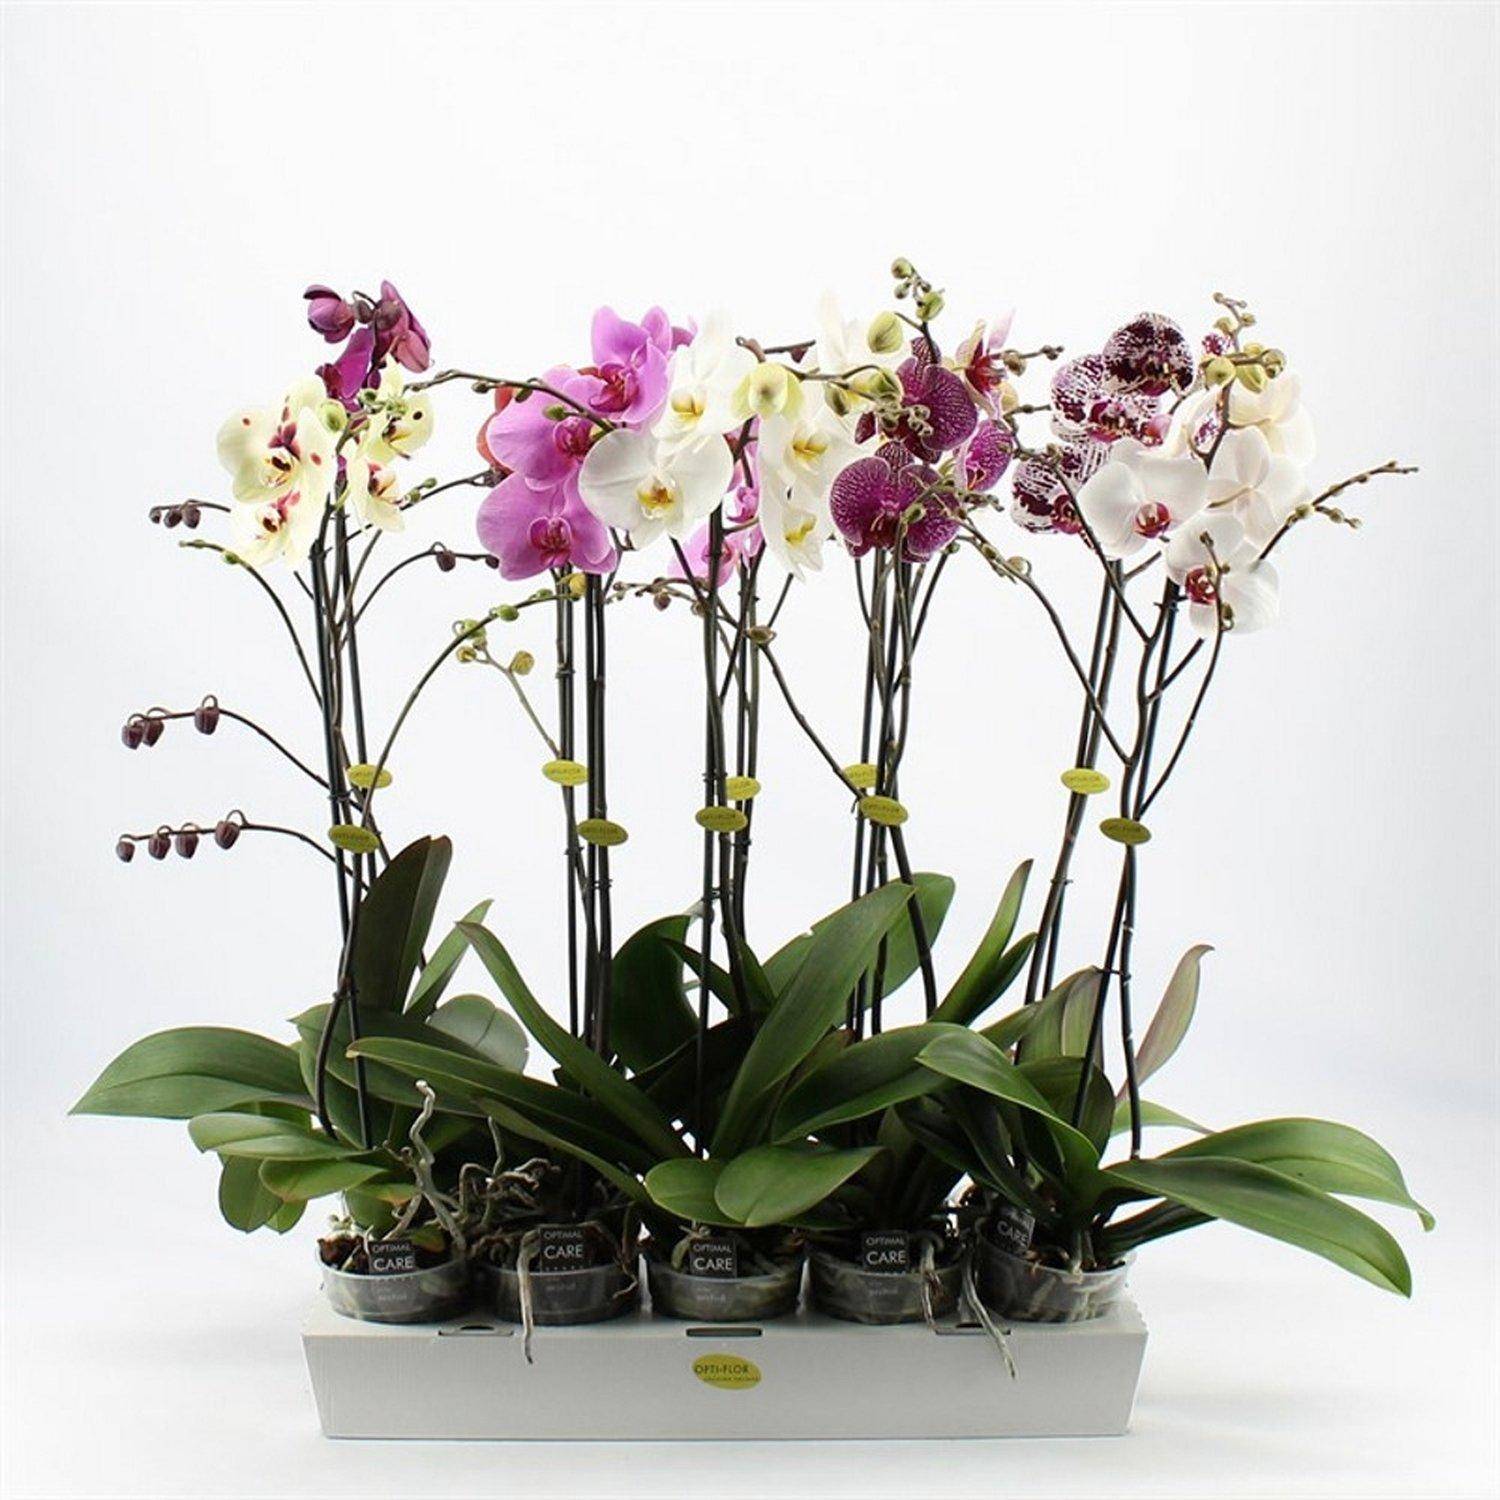 Как ухаживать за орхидеей в домашних условиях после покупки в магазине: что делать с только что купленным цветком, как пересаживать, поливать и подкармливать растение, фото и видео от цветоводов любителей